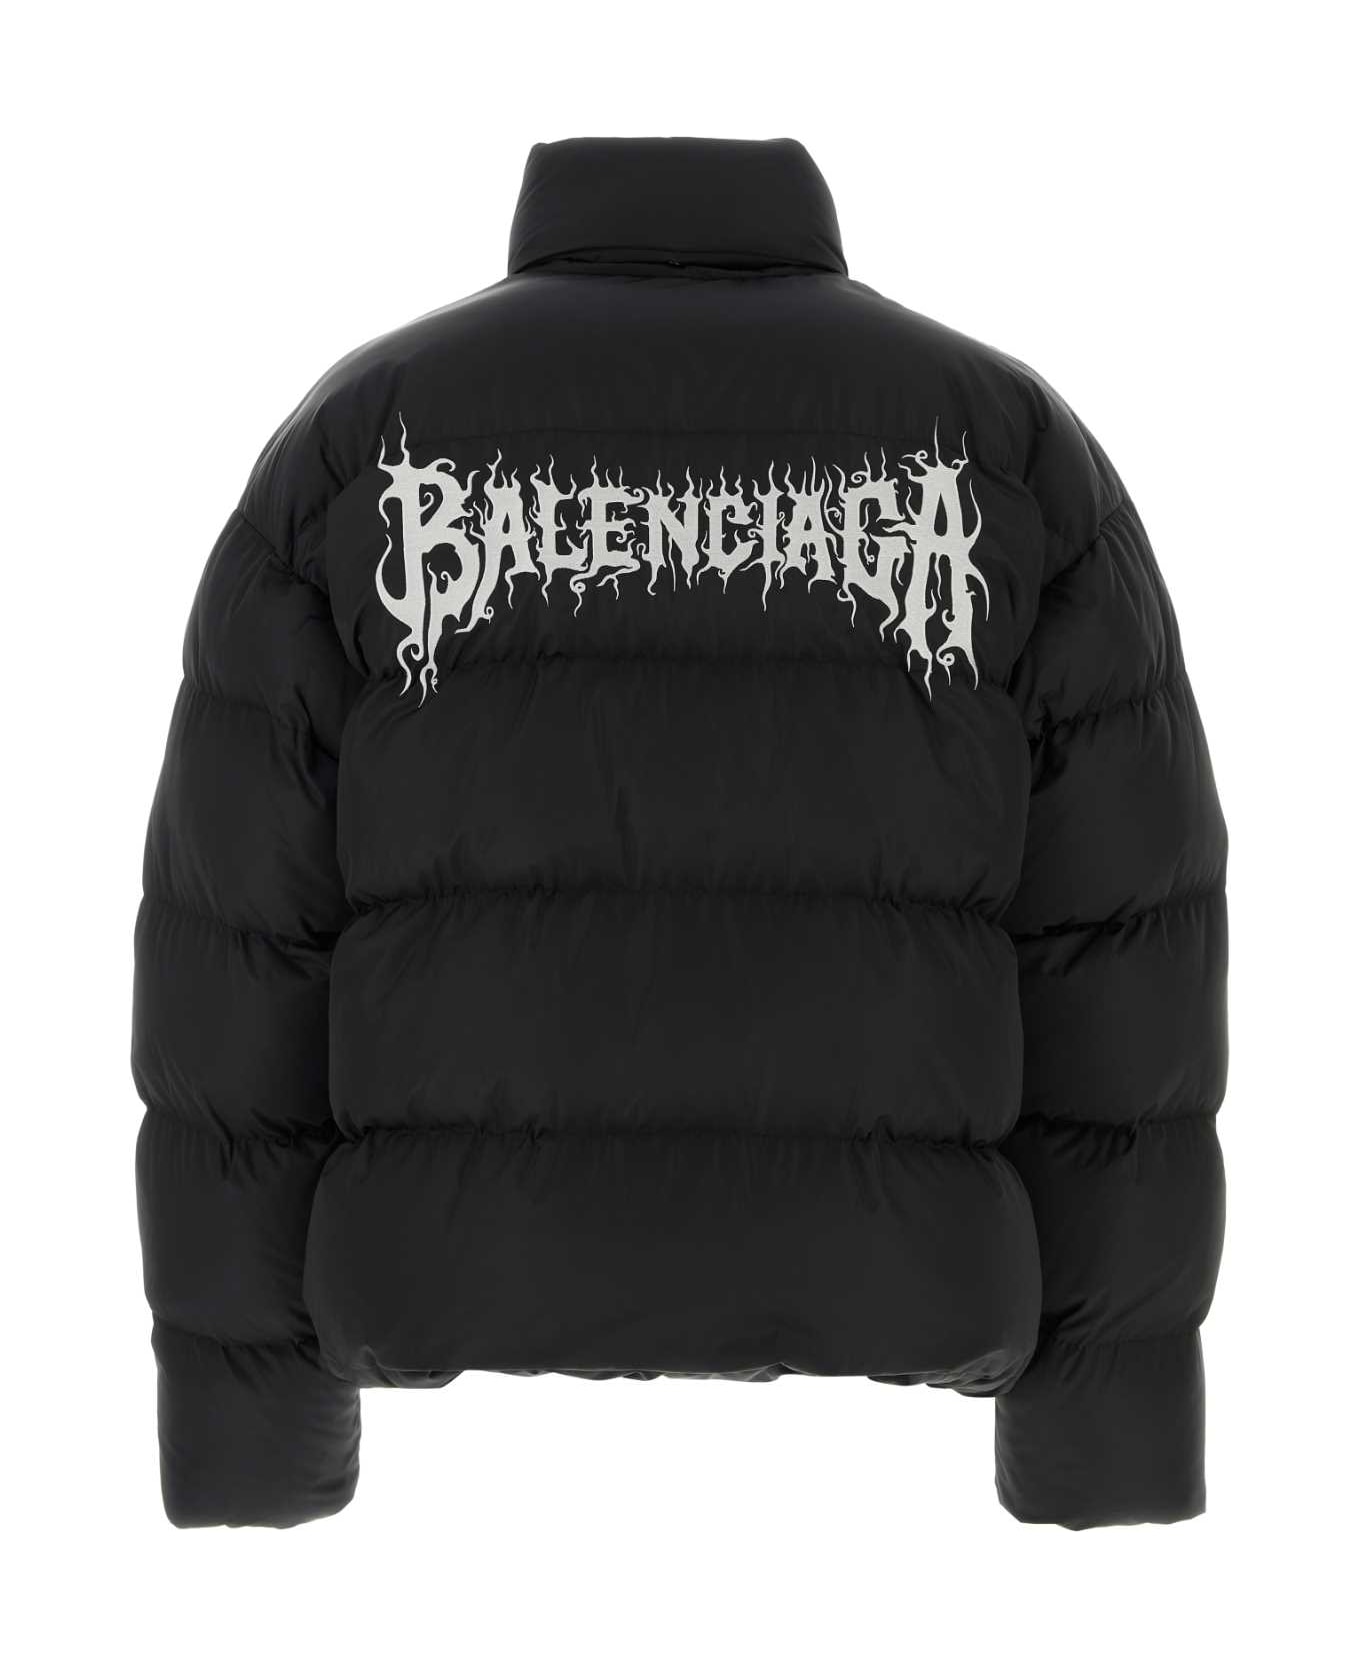 Balenciaga Padded Jacket - Black ダウンジャケット